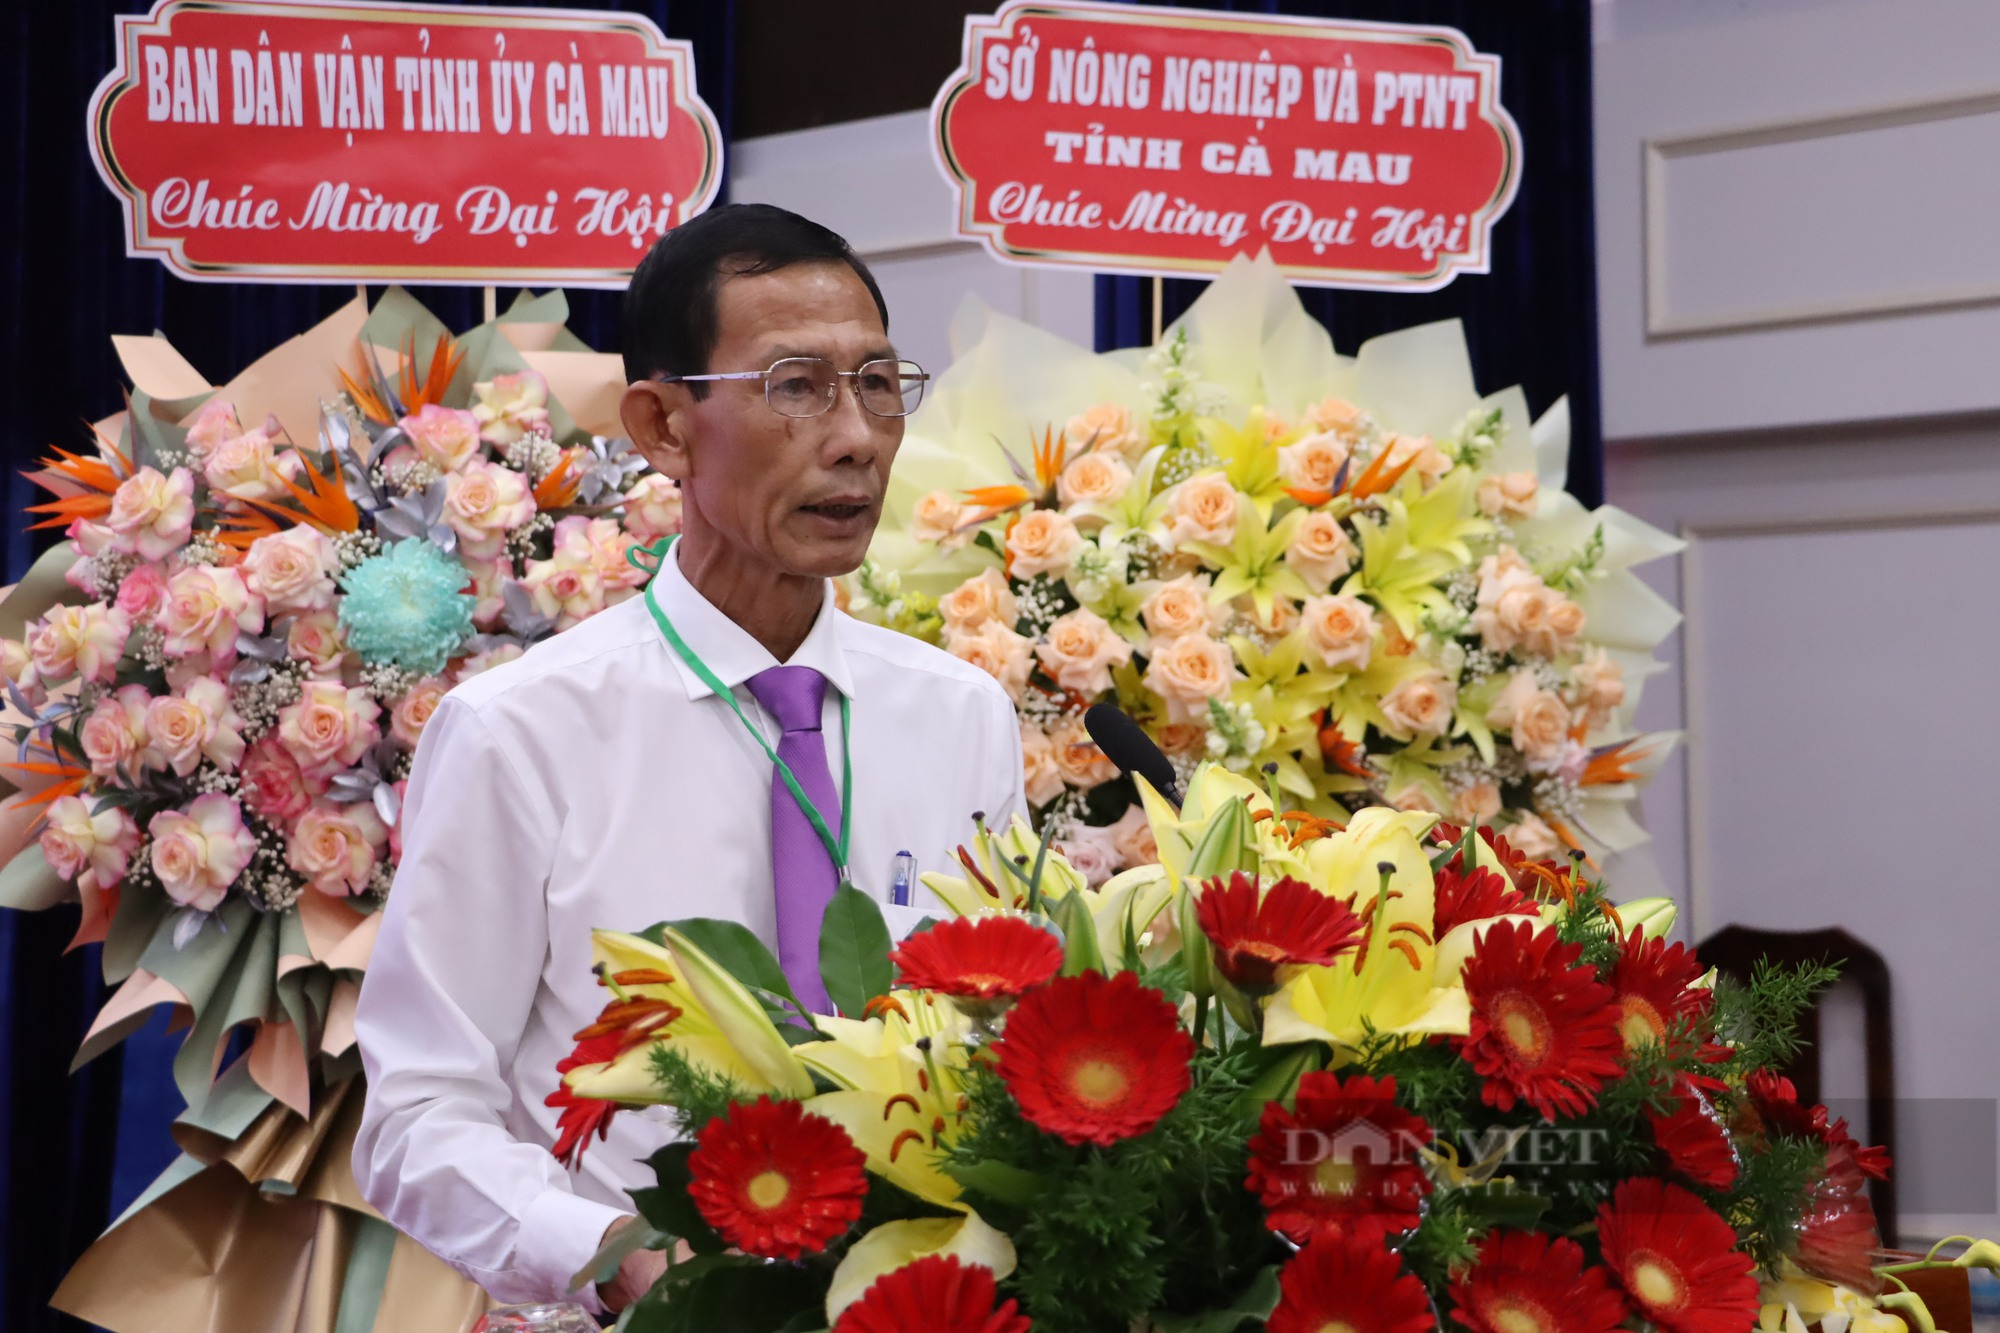 Phó Trưởng Ban Tổ chức Tỉnh ủy đắc cử chức danh Chủ tịch Hội Nông dân tỉnh Cà Mau khóa XI - Ảnh 1.